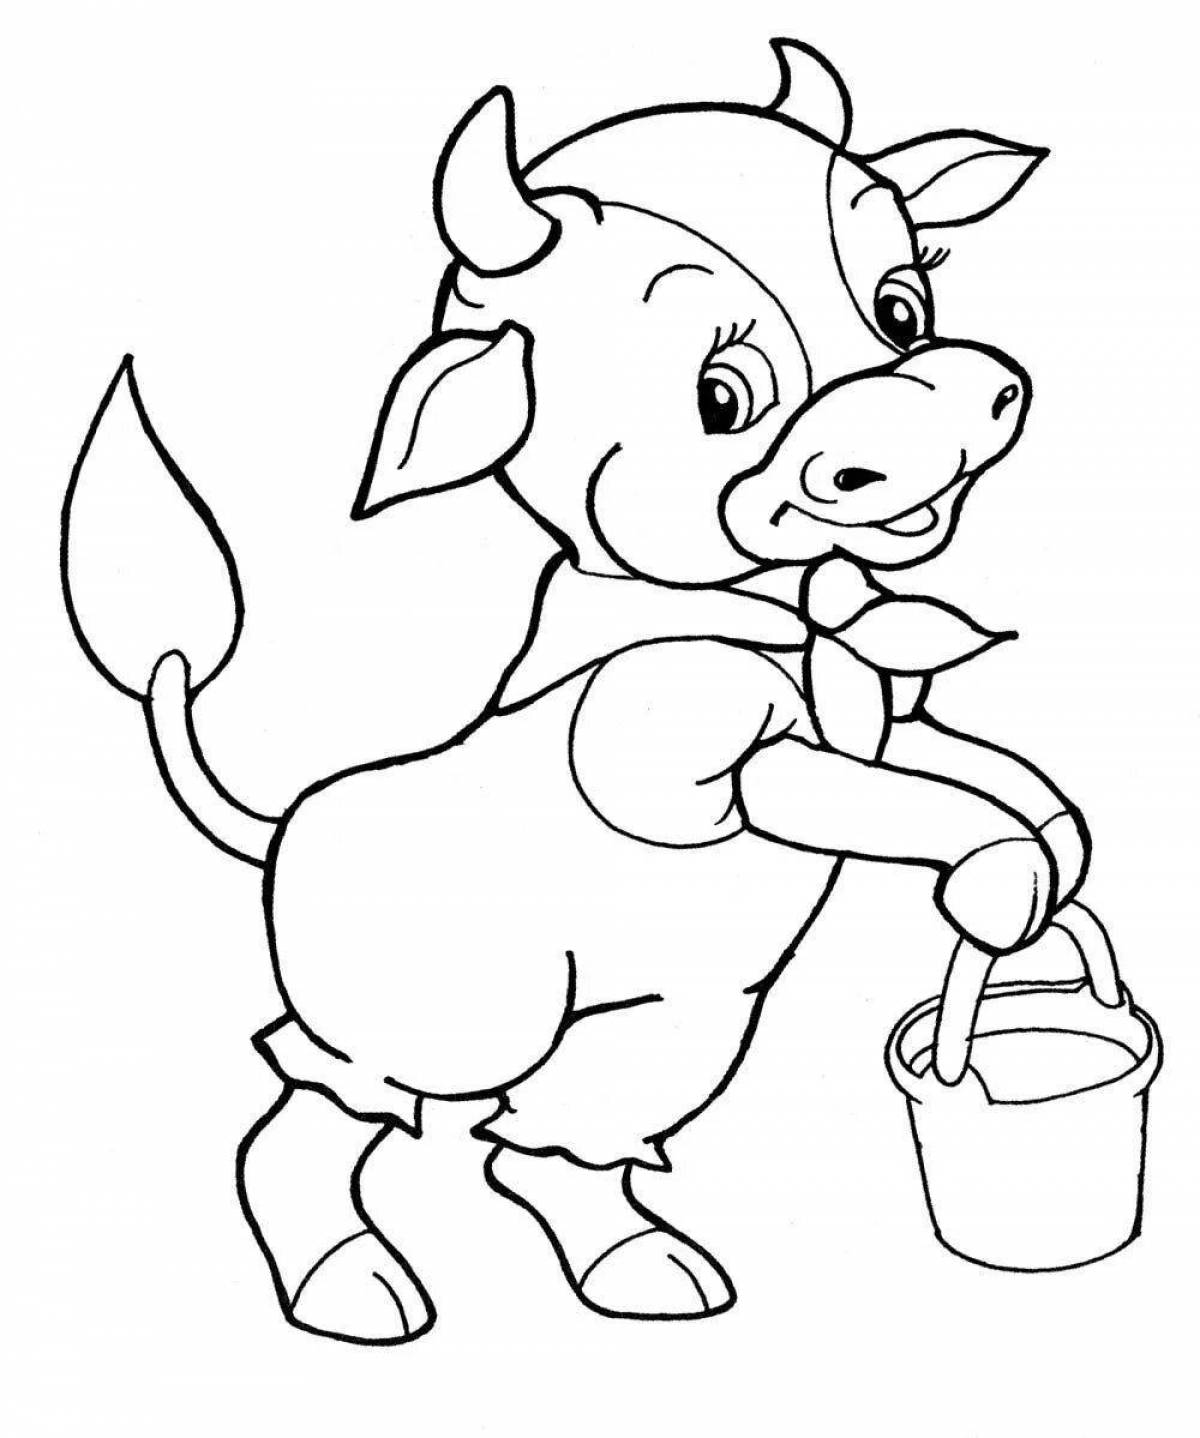 Fun calf coloring for kids